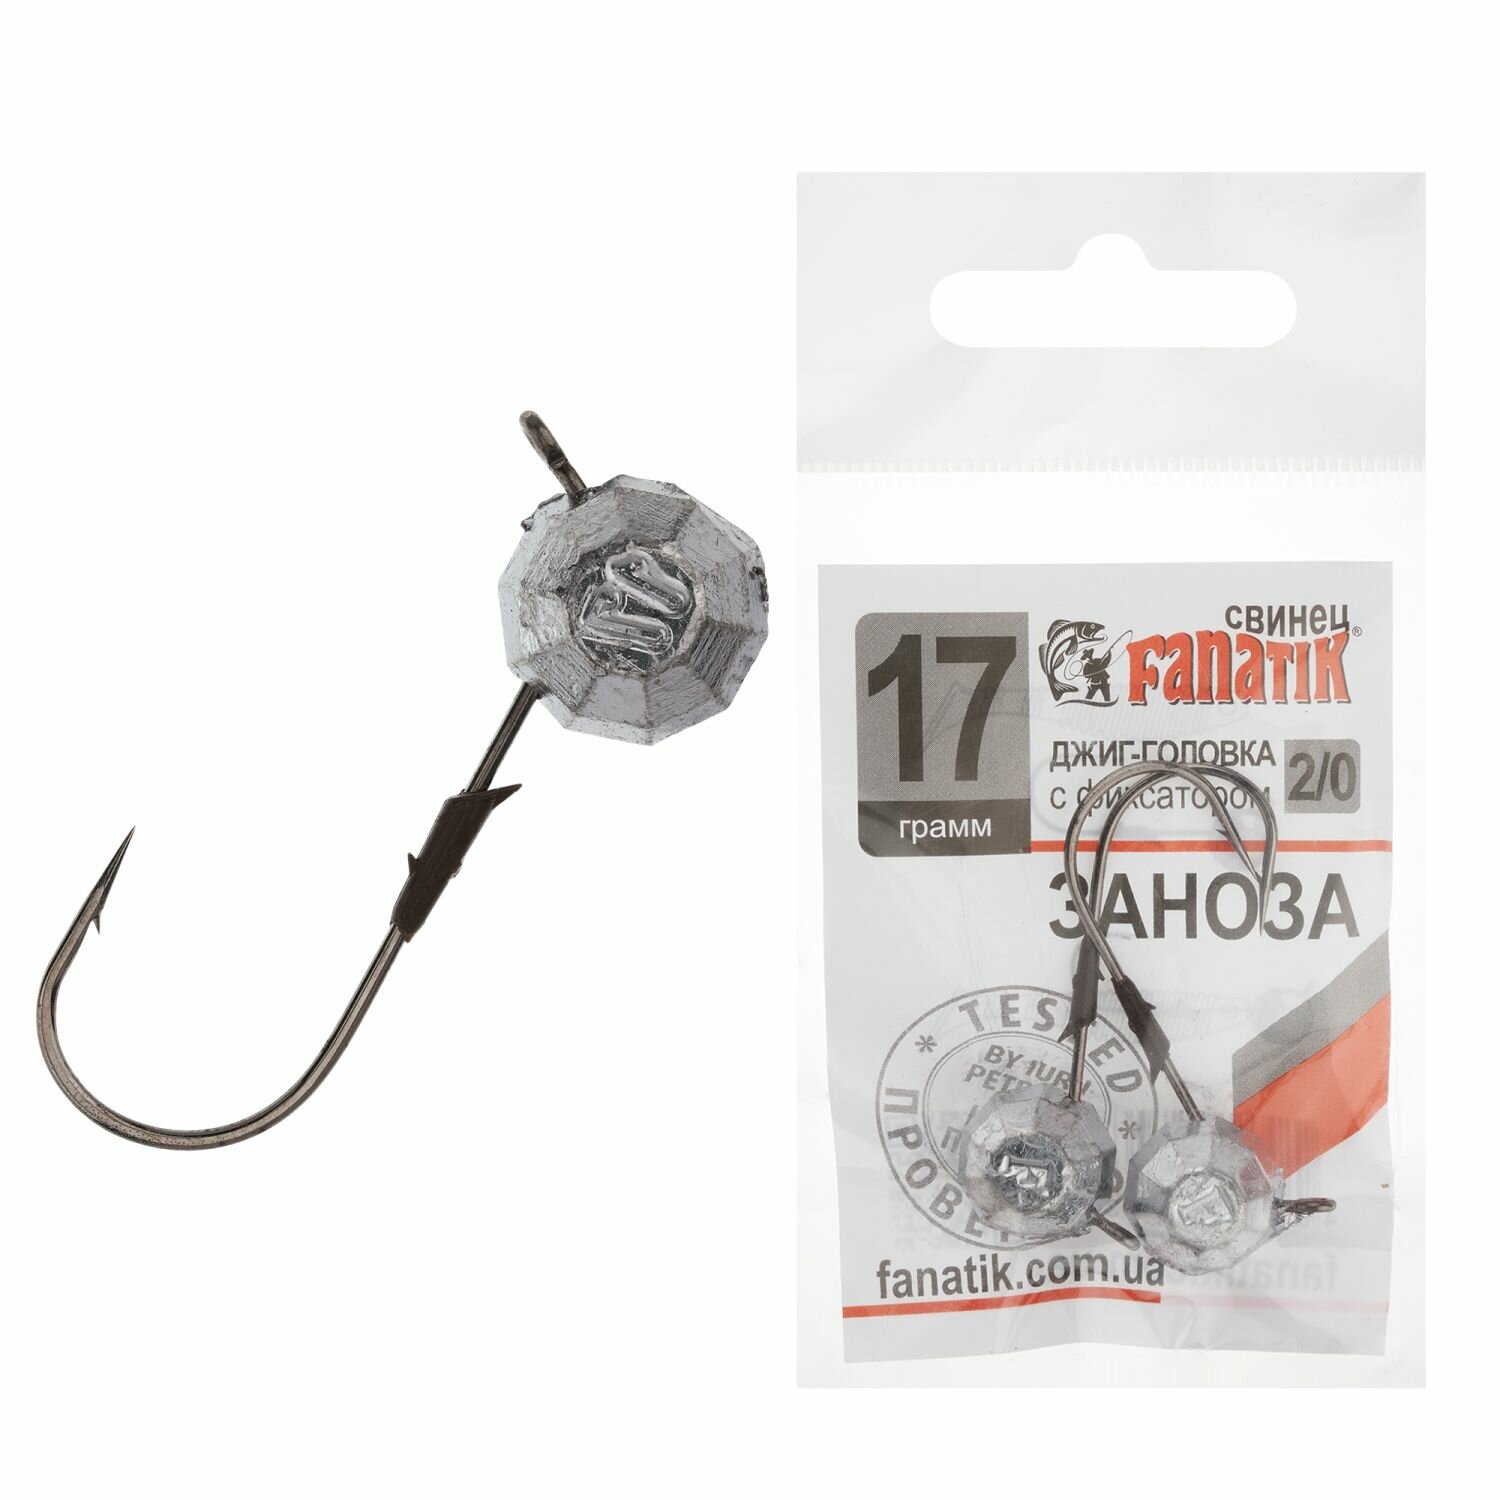 Джиг головка для рыбалки Fanatik Заноза #2/0 17гр, 2 шт в упаковке